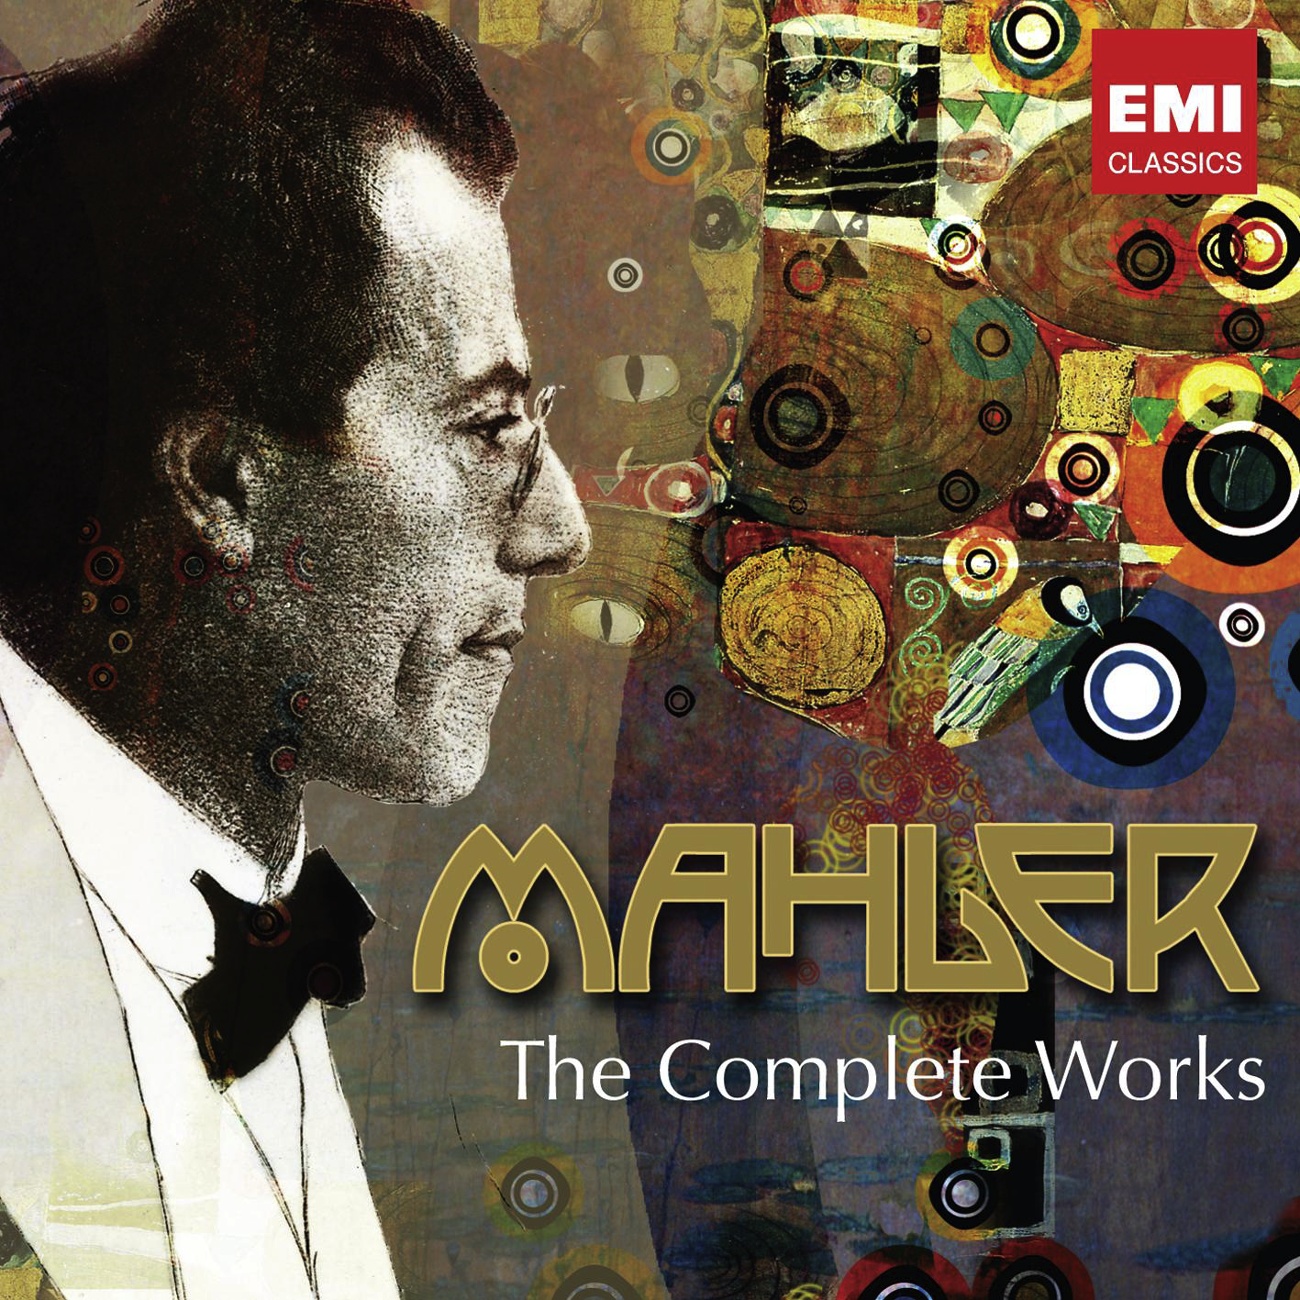 150th Anniversary Box - Mahler